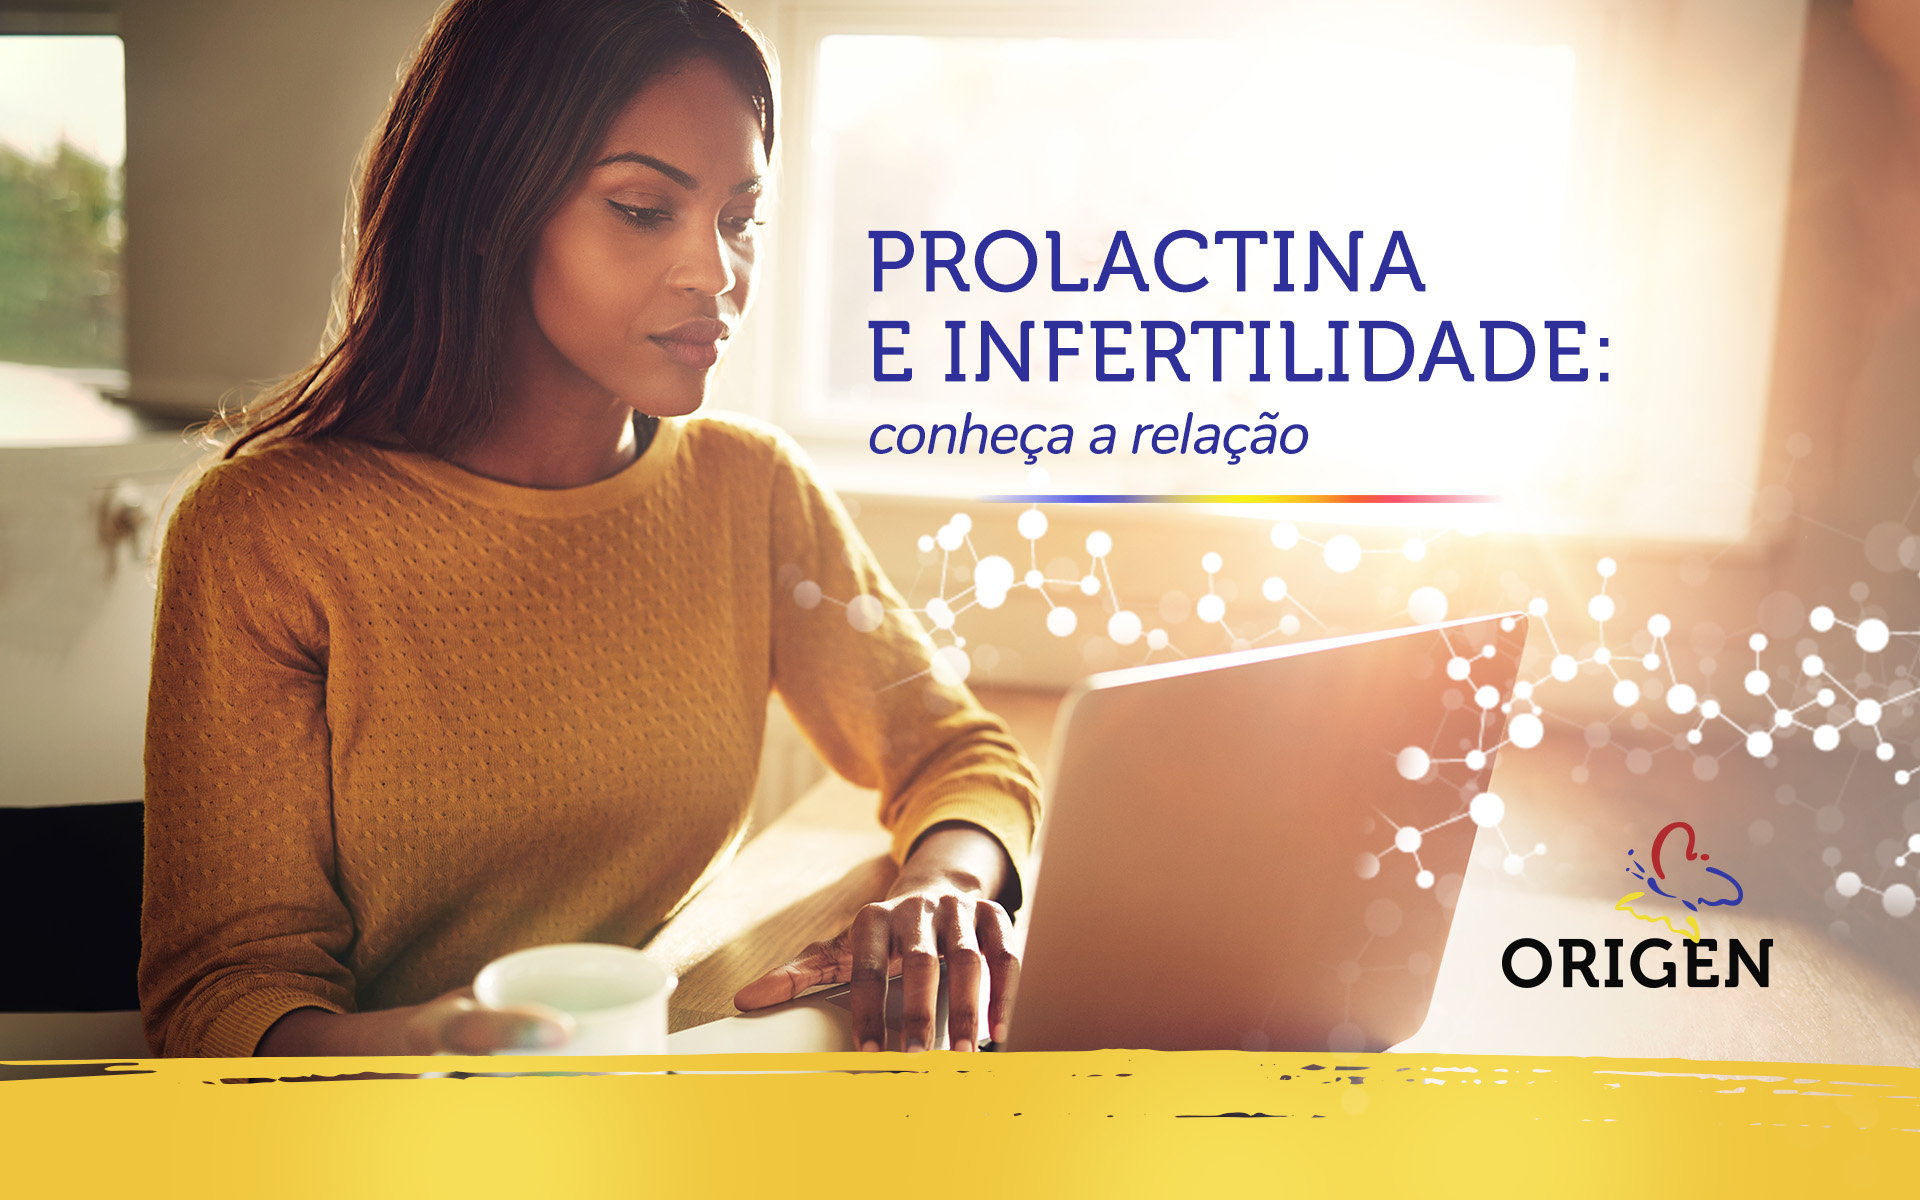 Prolactina e infertilidade: conheça a relação